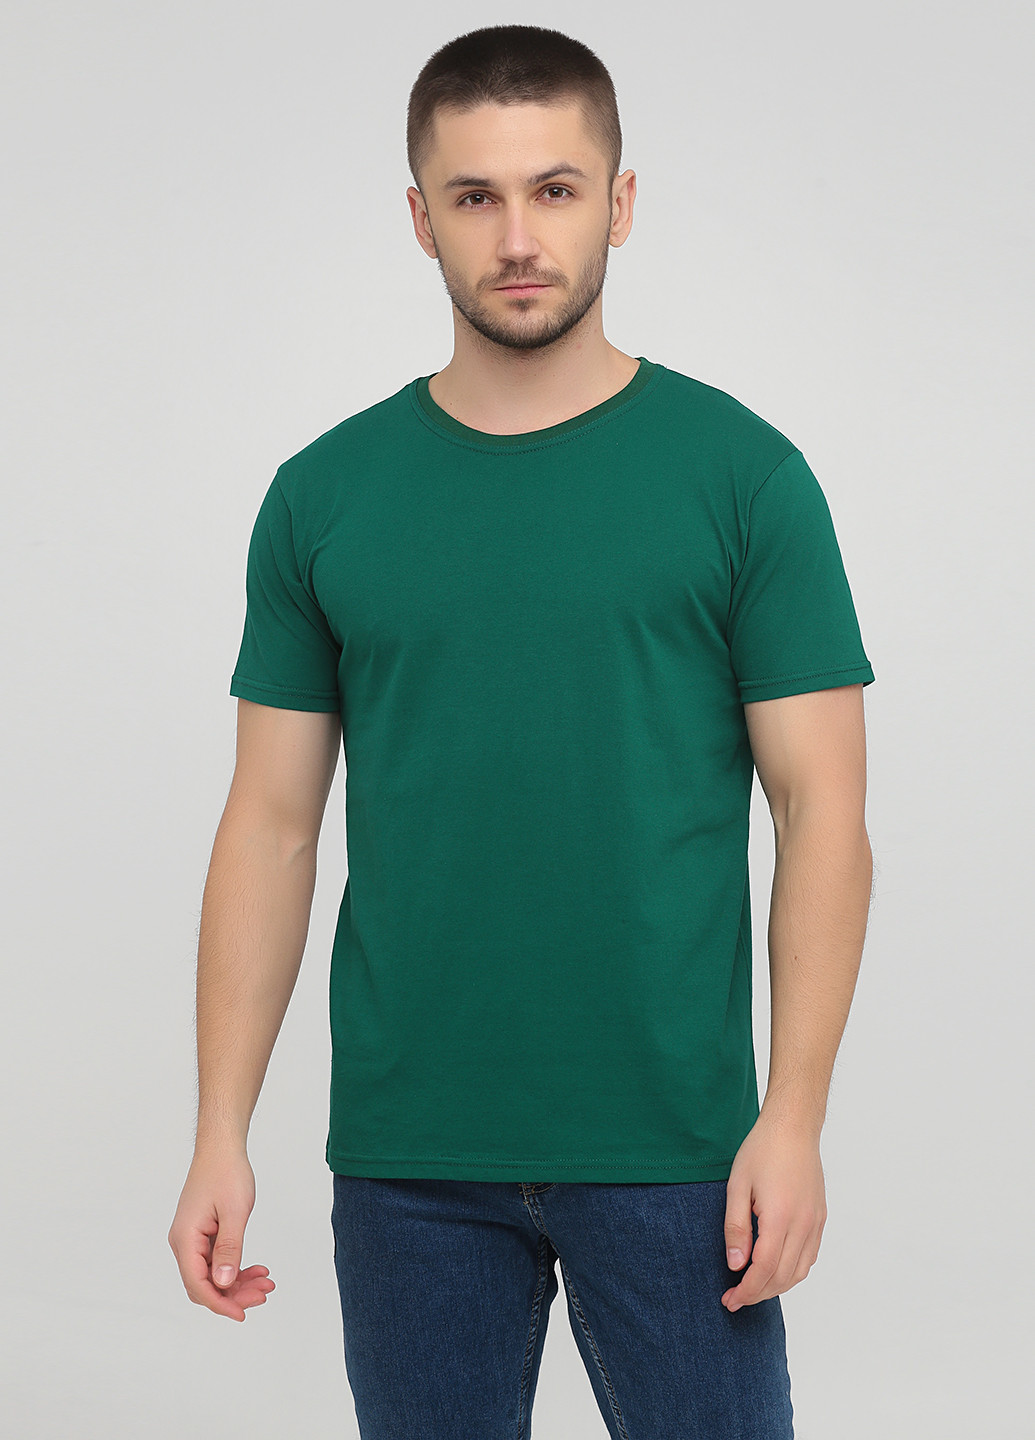 Зелена футболка чоловіча 19м319-17 синя(електро) з коротким рукавом Malta